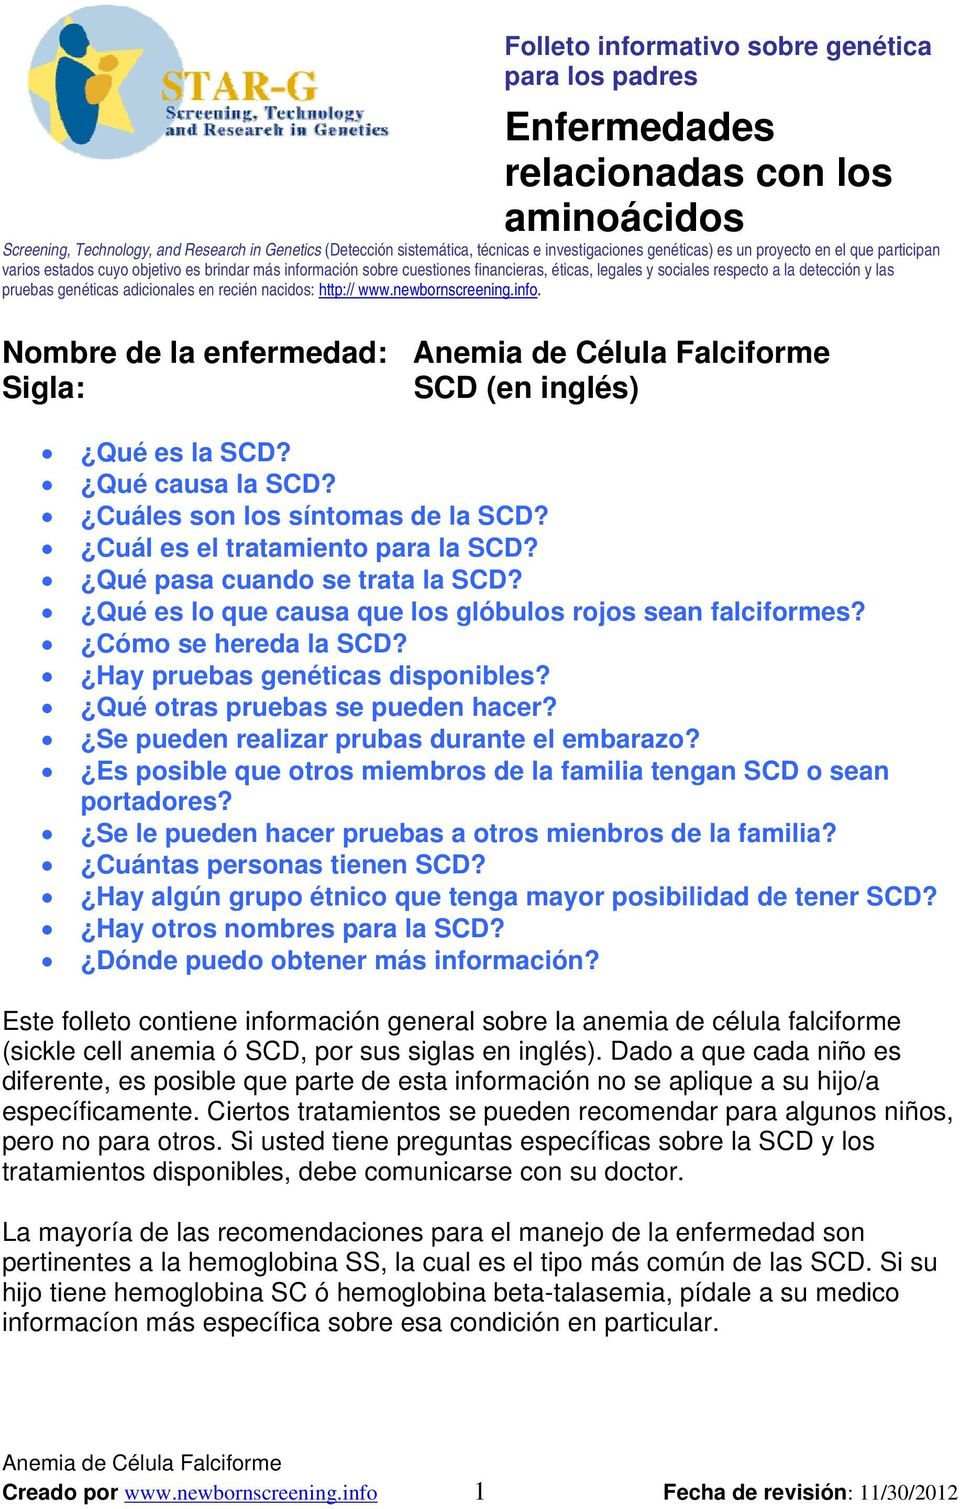 genéticas adicionales en recién nacidos: http:// www.newbornscreening.info. Nombre de la enfermedad: Sigla: SCD (en inglés) Qué es la SCD? Qué causa la SCD? Cuáles son los síntomas de la SCD?